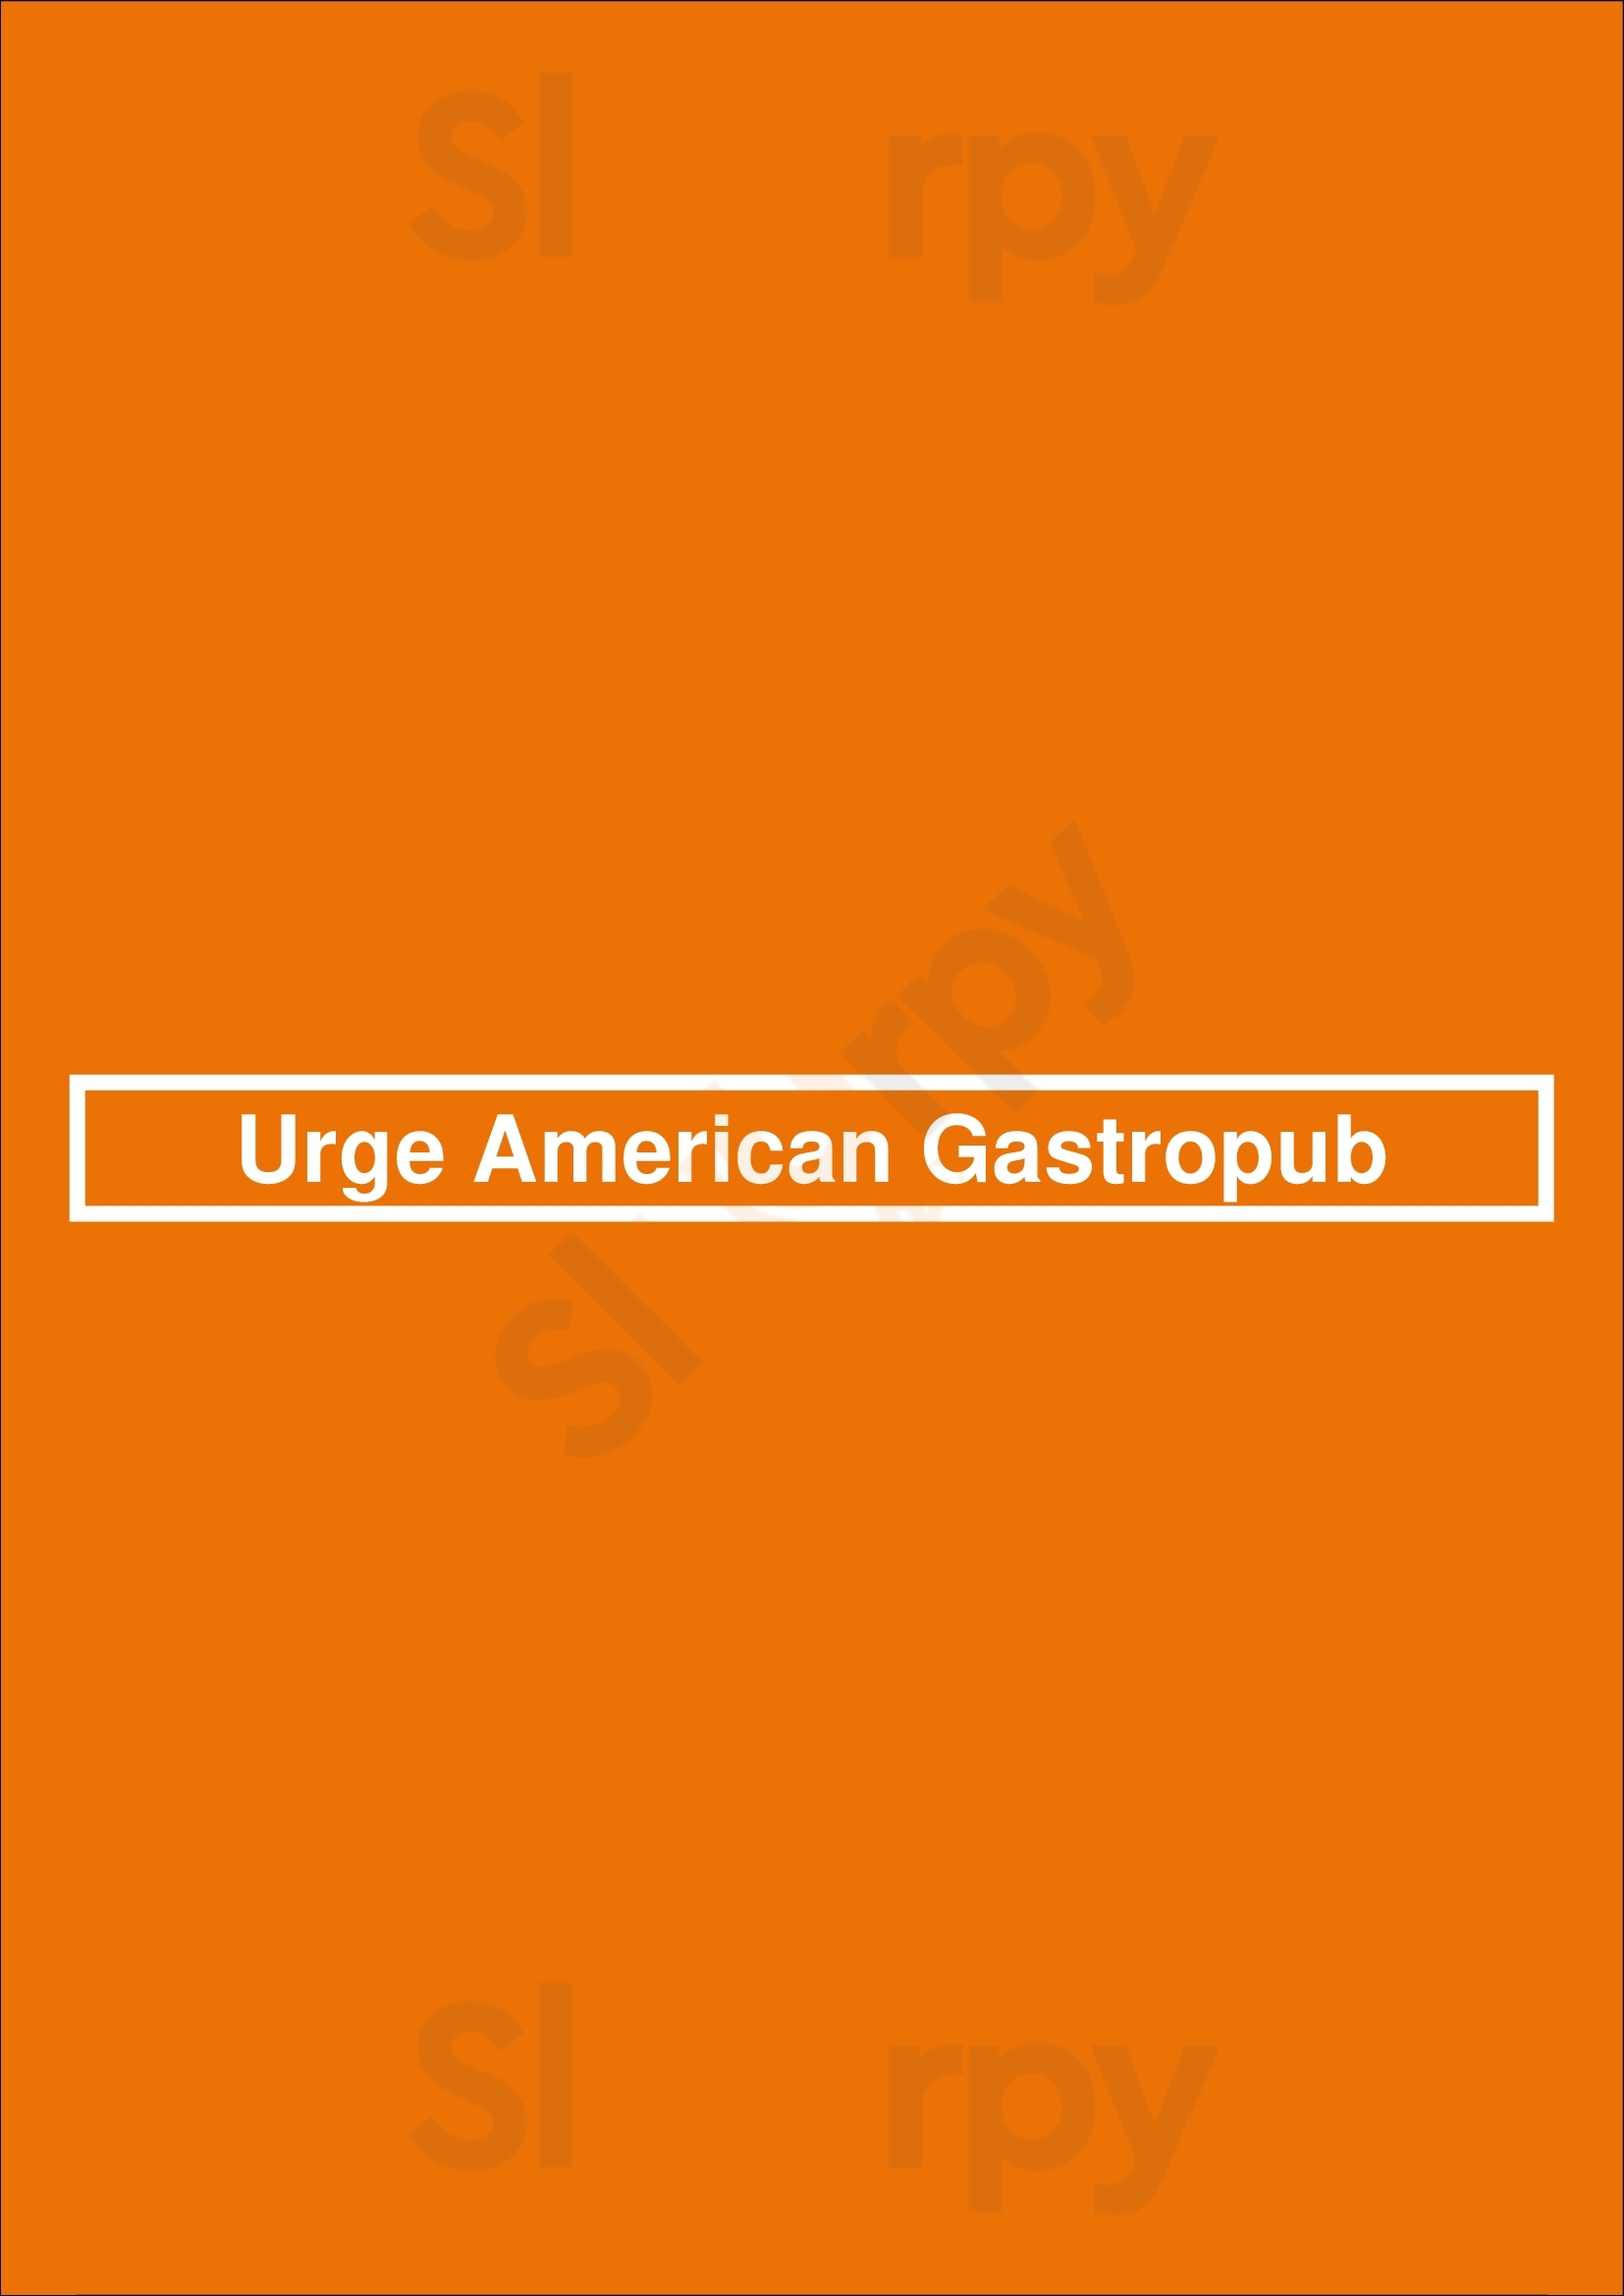 Urge American Gastropub San Diego Menu - 1